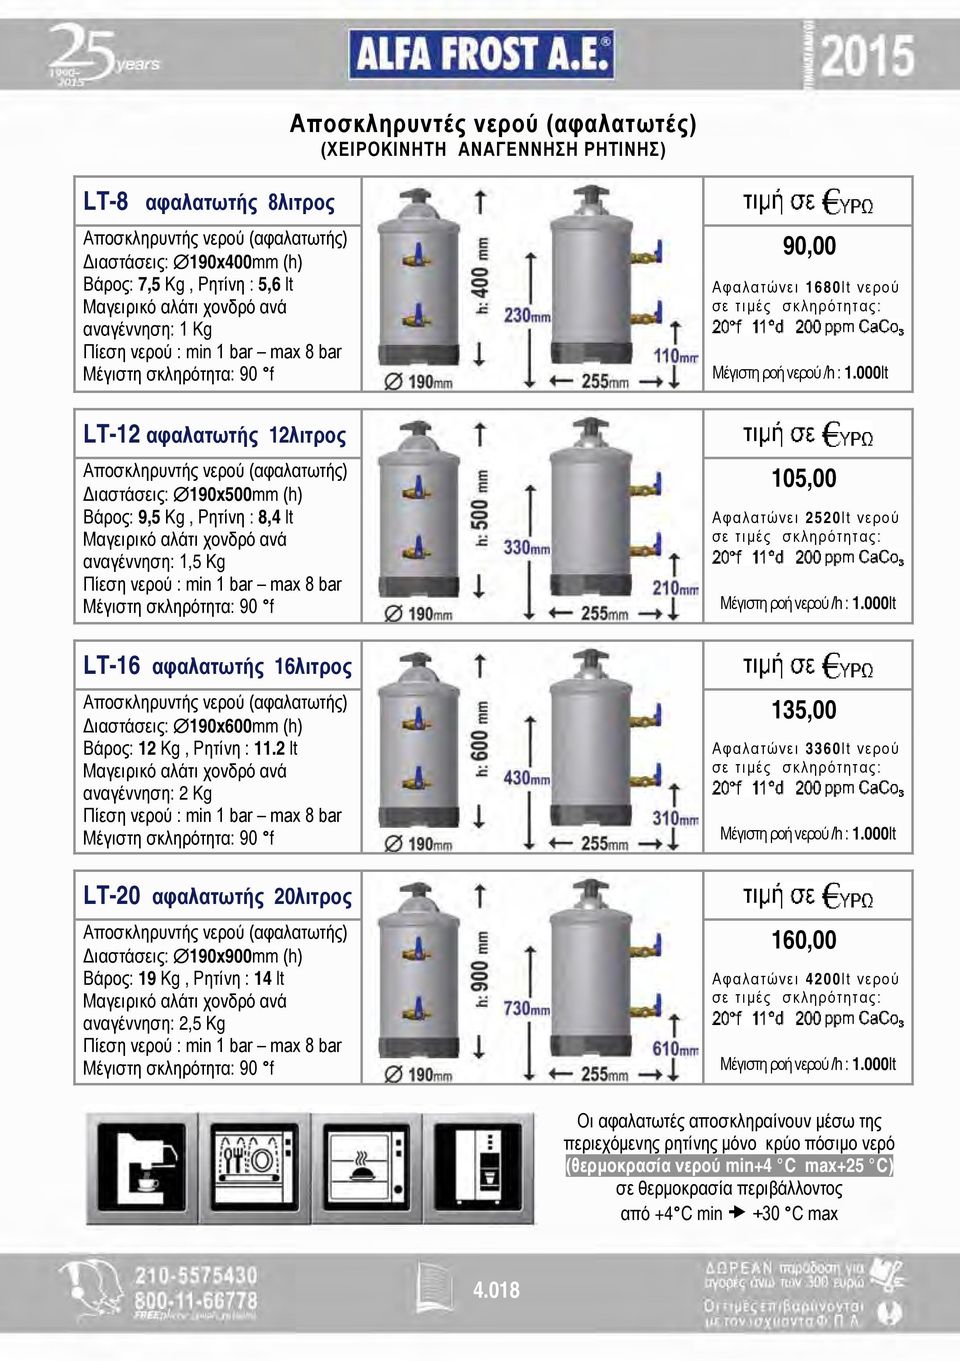 lt Μαγειρικό αλάτι χονδρό ανά αναγέννηση: 1,5 Kg Πίεση νερού : min 1 bar max 8 bar Μέγιστη σκληρότητα: 90 f LT-16 αφαλατωτής 16λιτρος Αποσκληρυντής νερού (αφαλατωτής) Διαστάσεις: 190x600mm (h) Βάρος: